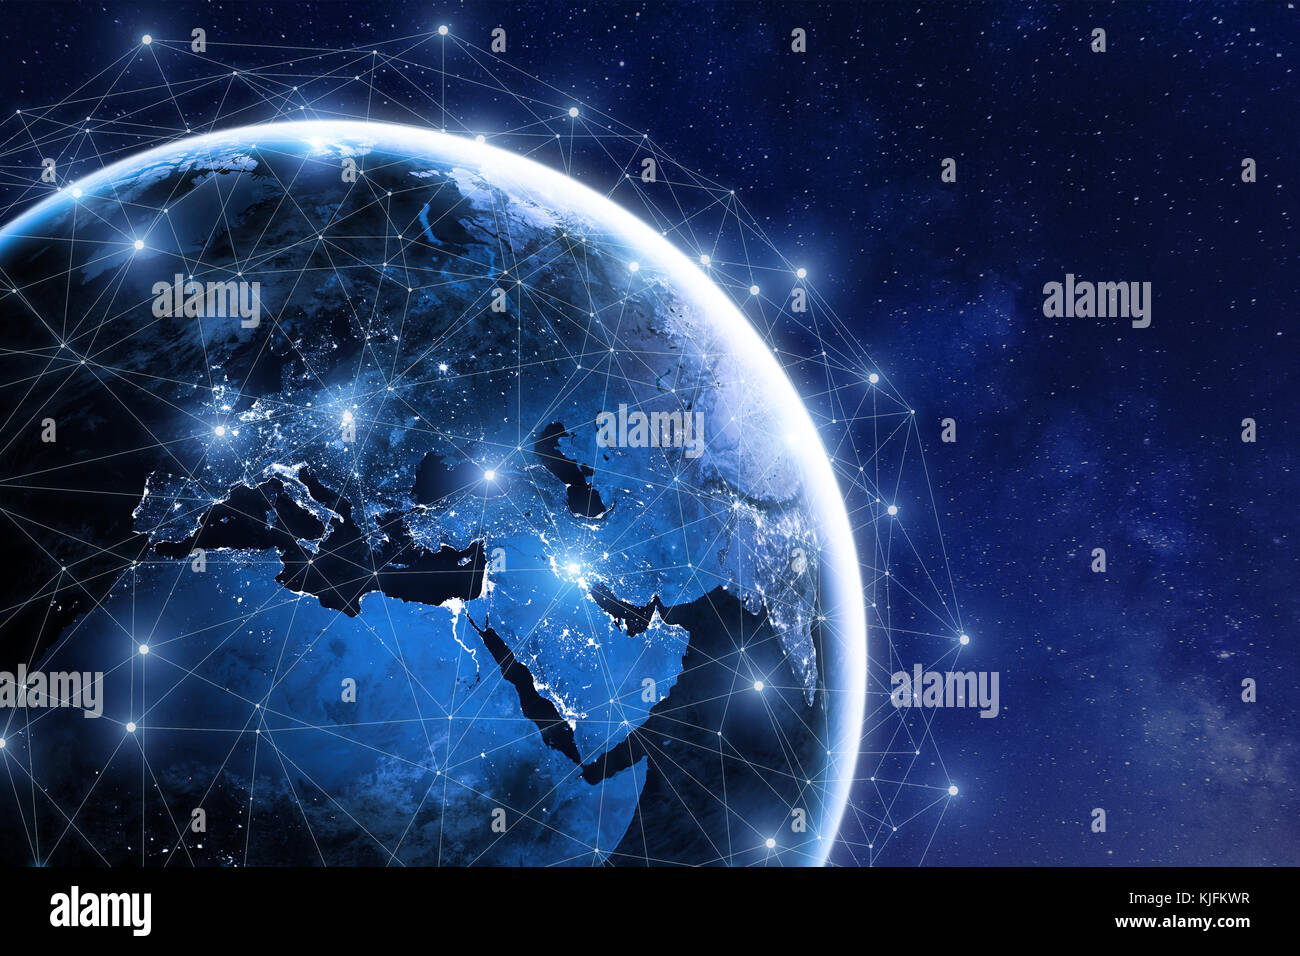 Die globale Kommunikation Netzwerk rund um die Erde im Weltraum, weltweiten Austausch von Informationen über das Internet und die angeschlossenen Satelliten für Finanzen, cryptoc Stockfoto